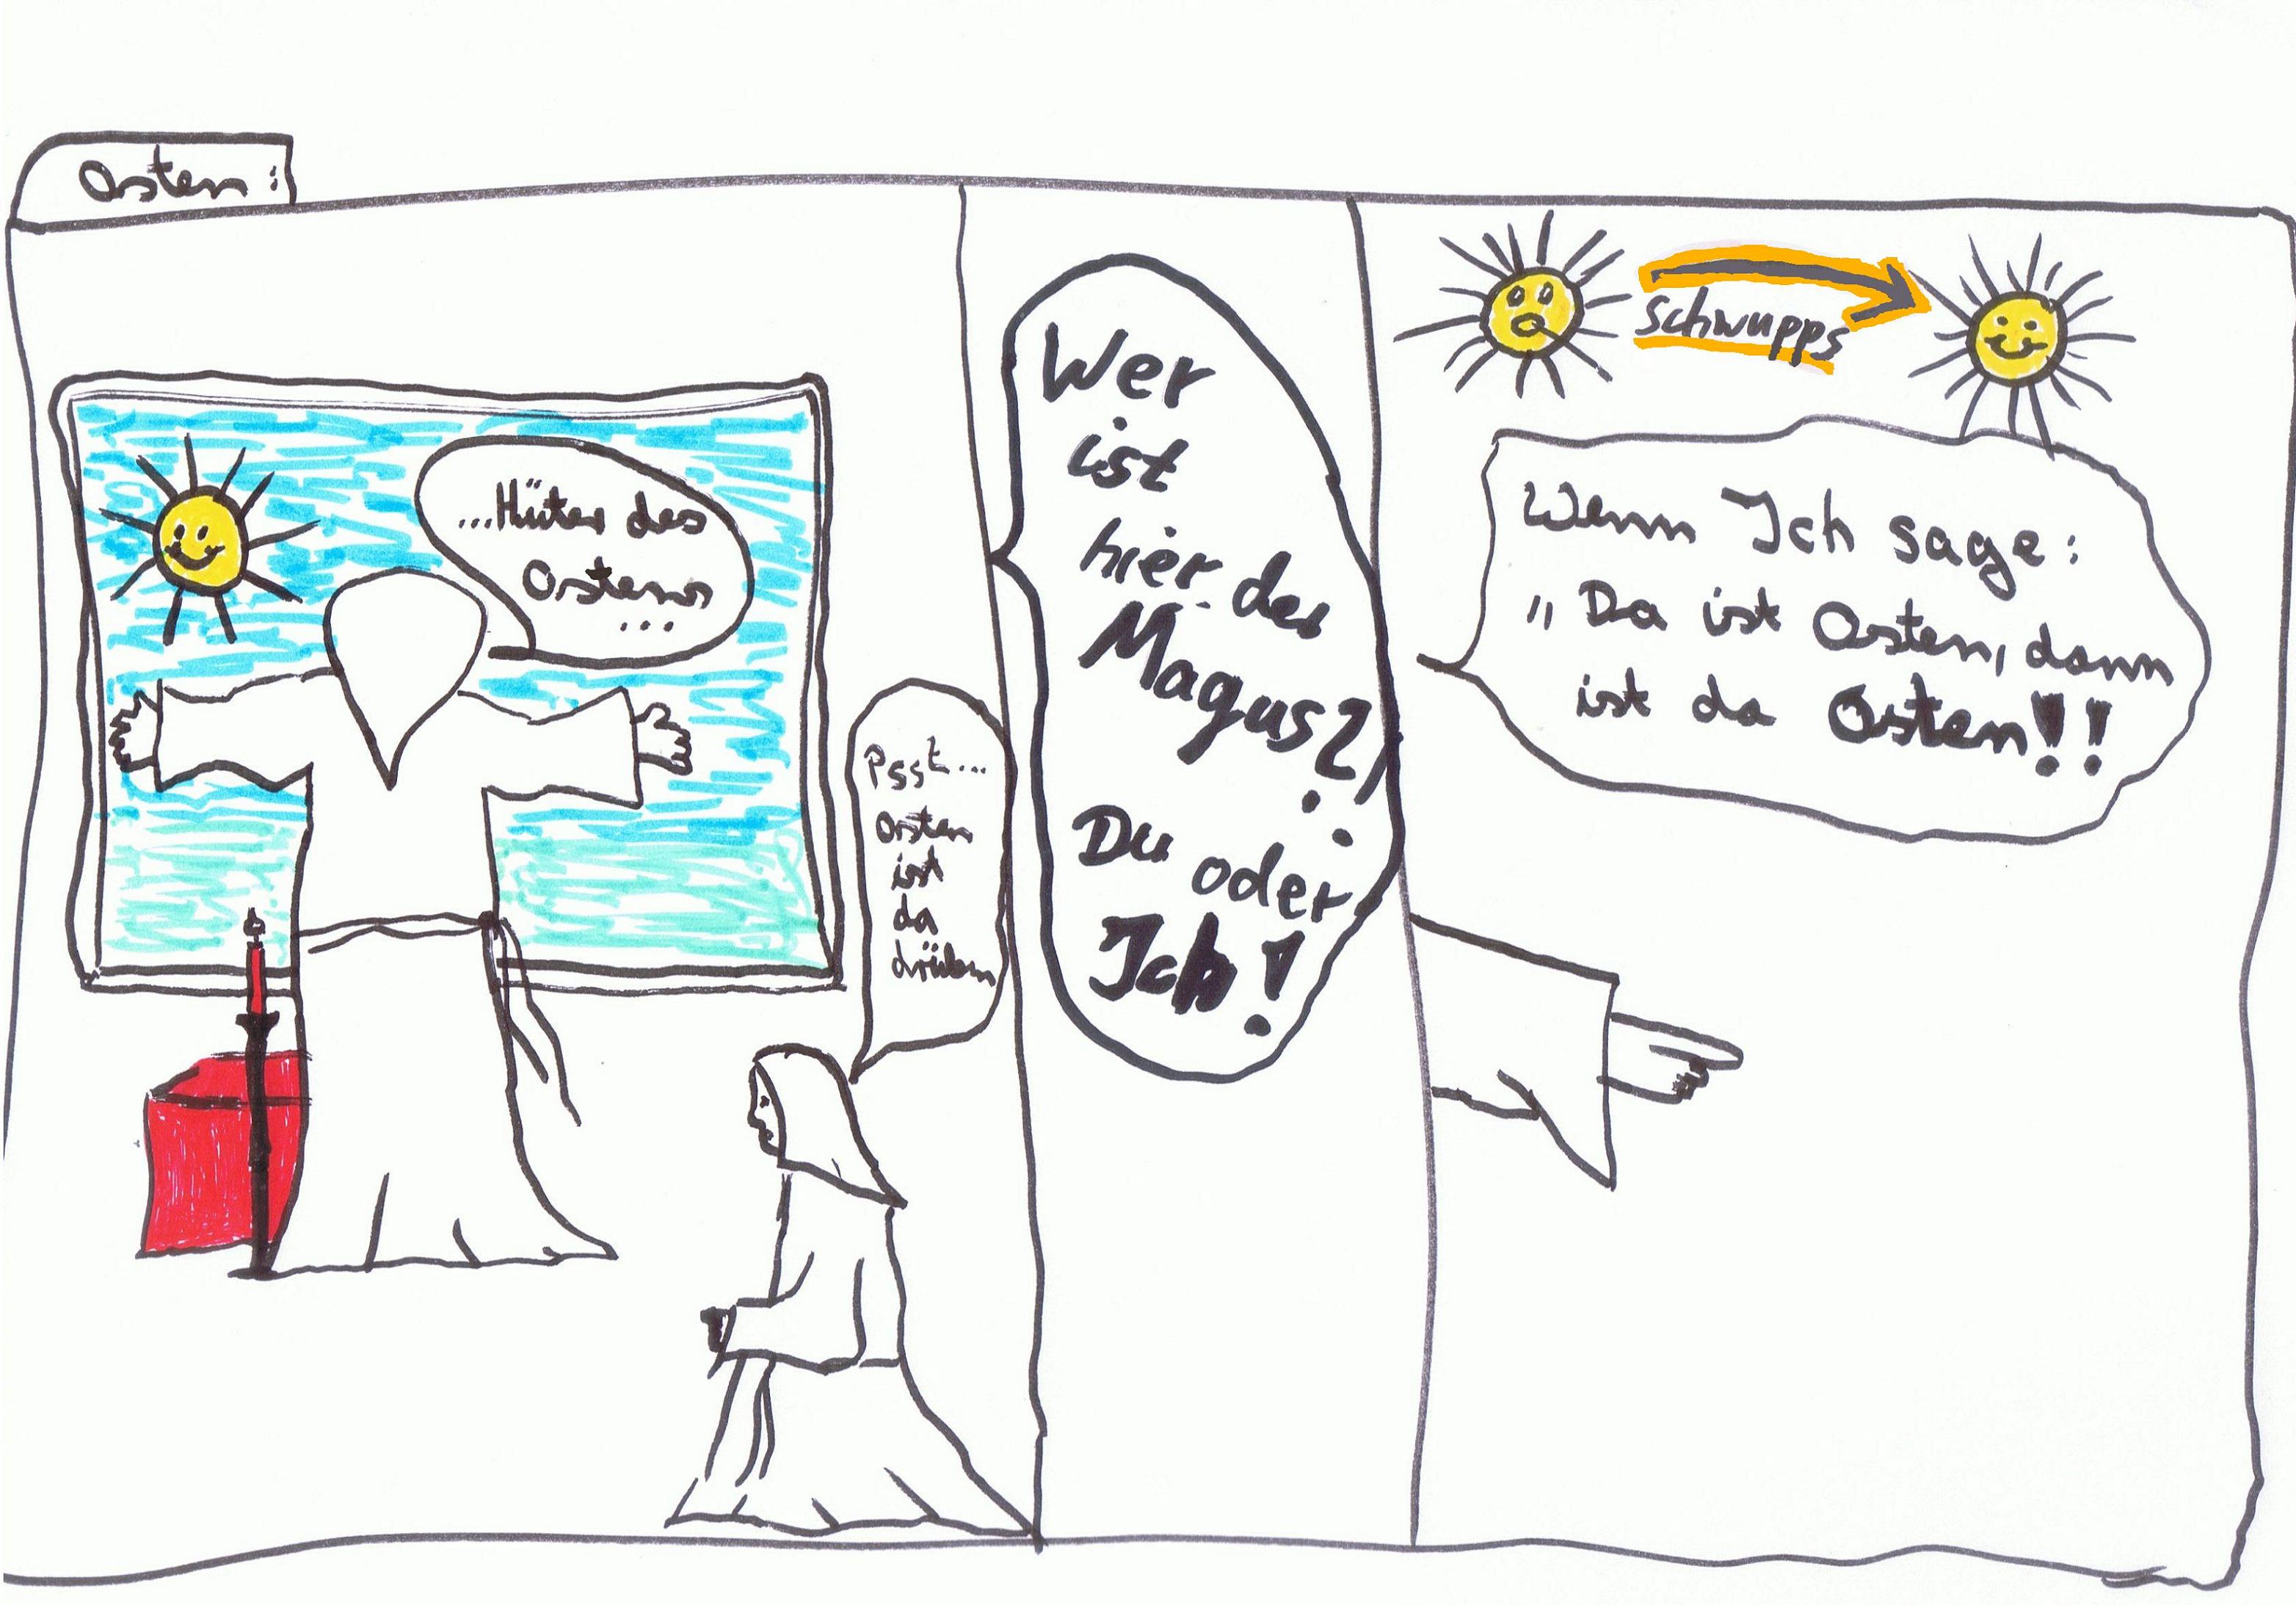 Attachment Cartoon2_Osten_ fertig_7-2012.JPG